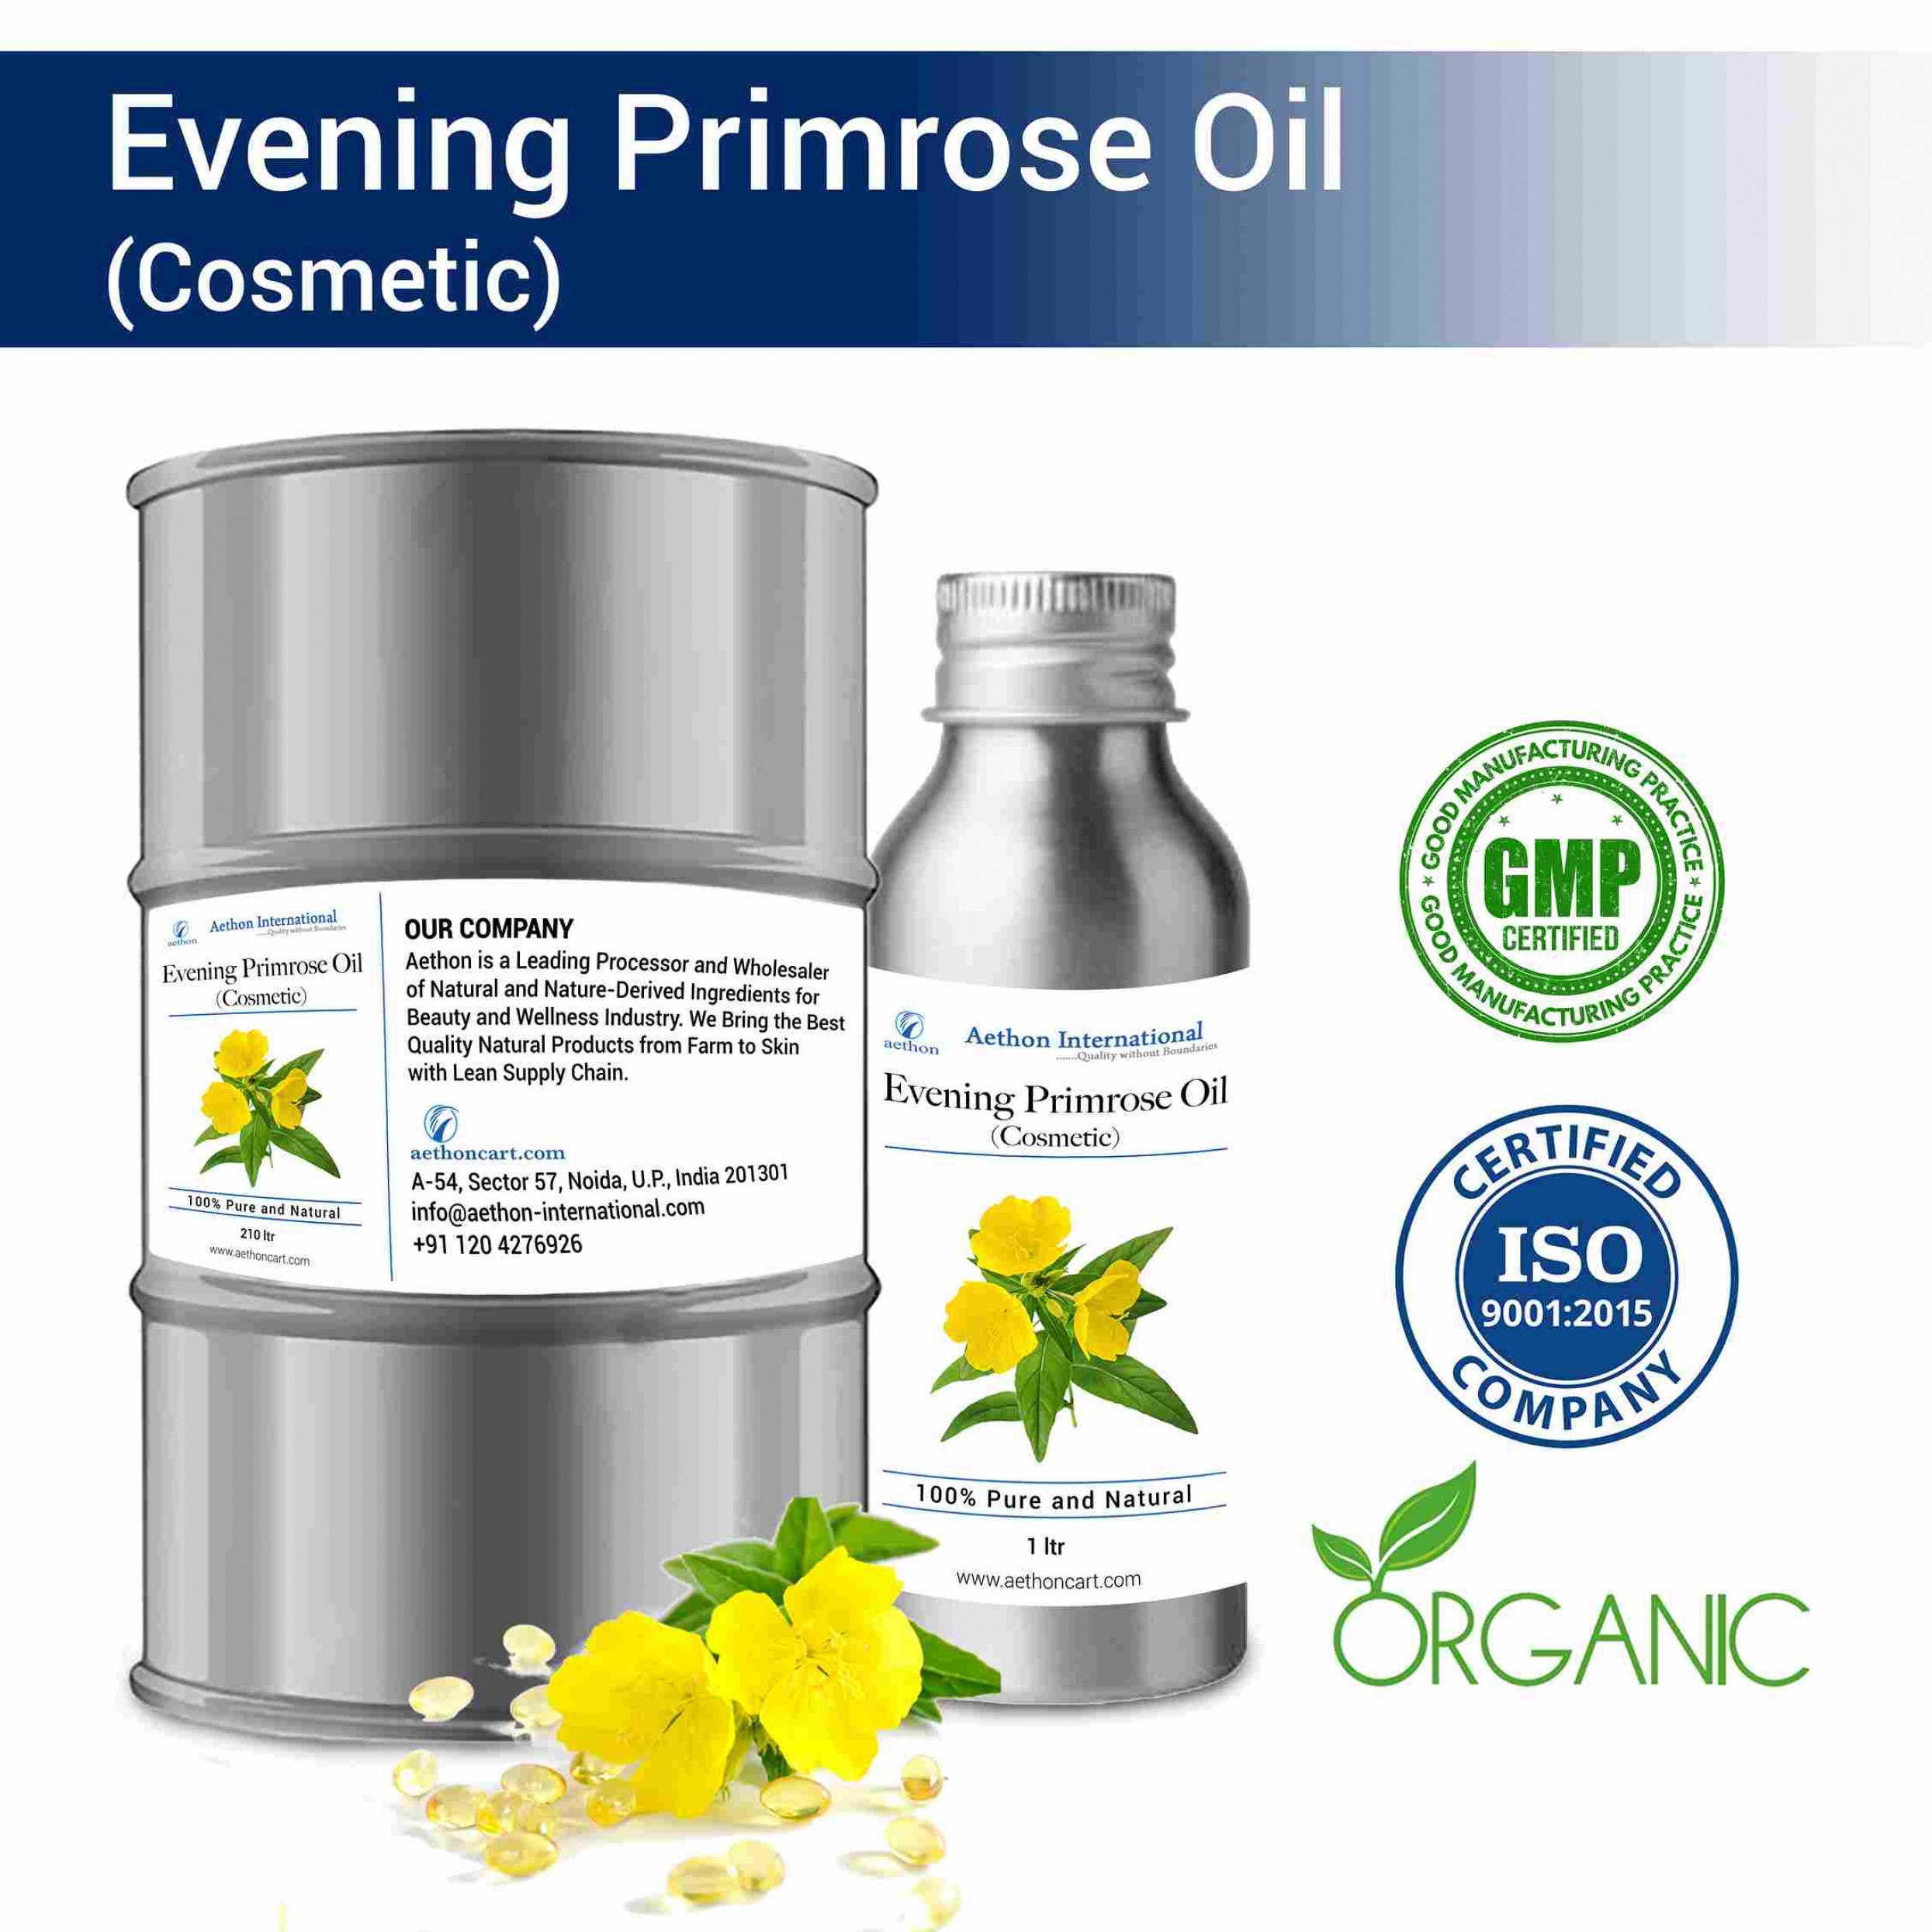 Evening Primrose Oil (Cosmetic)